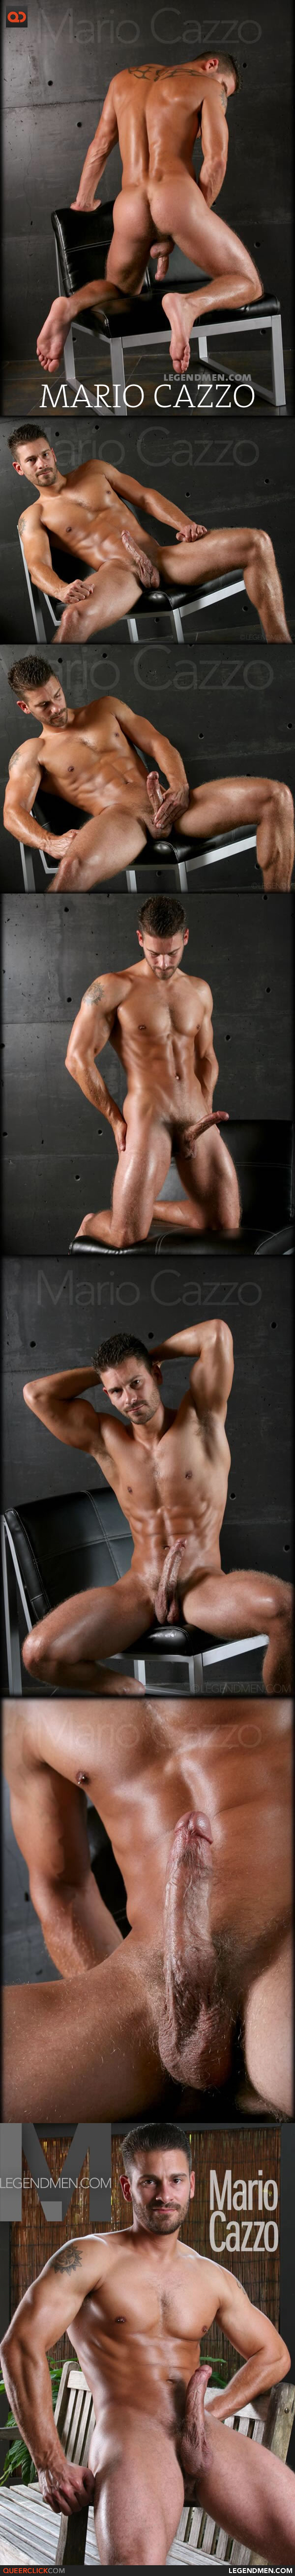 Legend Men: Mario Cazzo